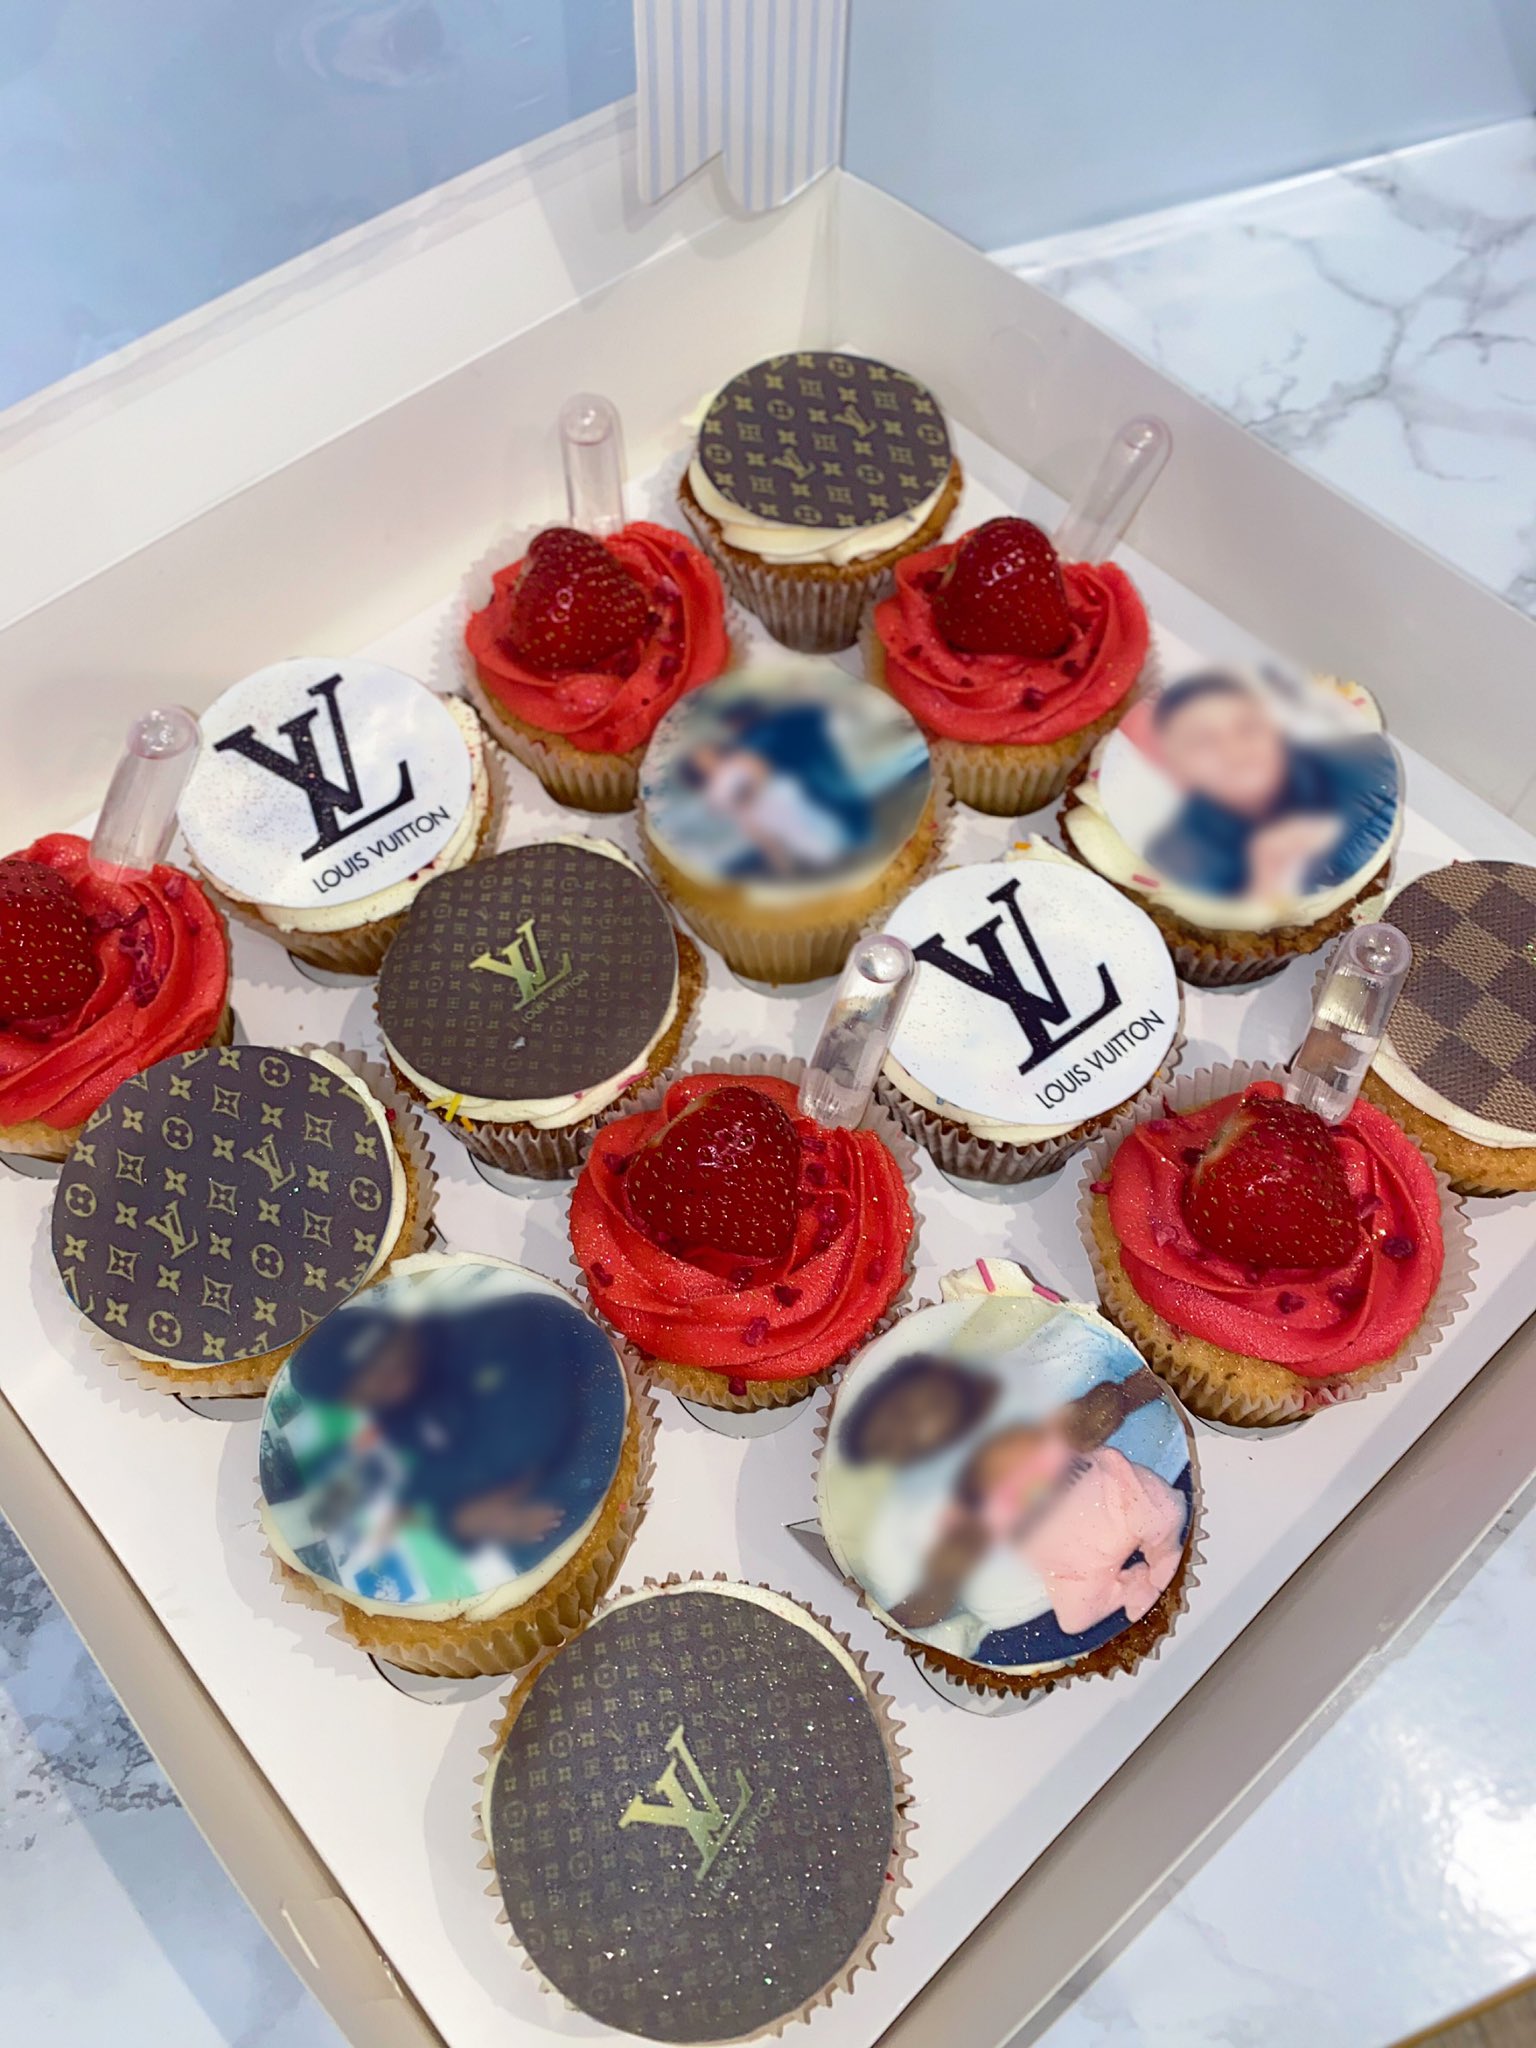 Louis Vuitton Cupcakes 